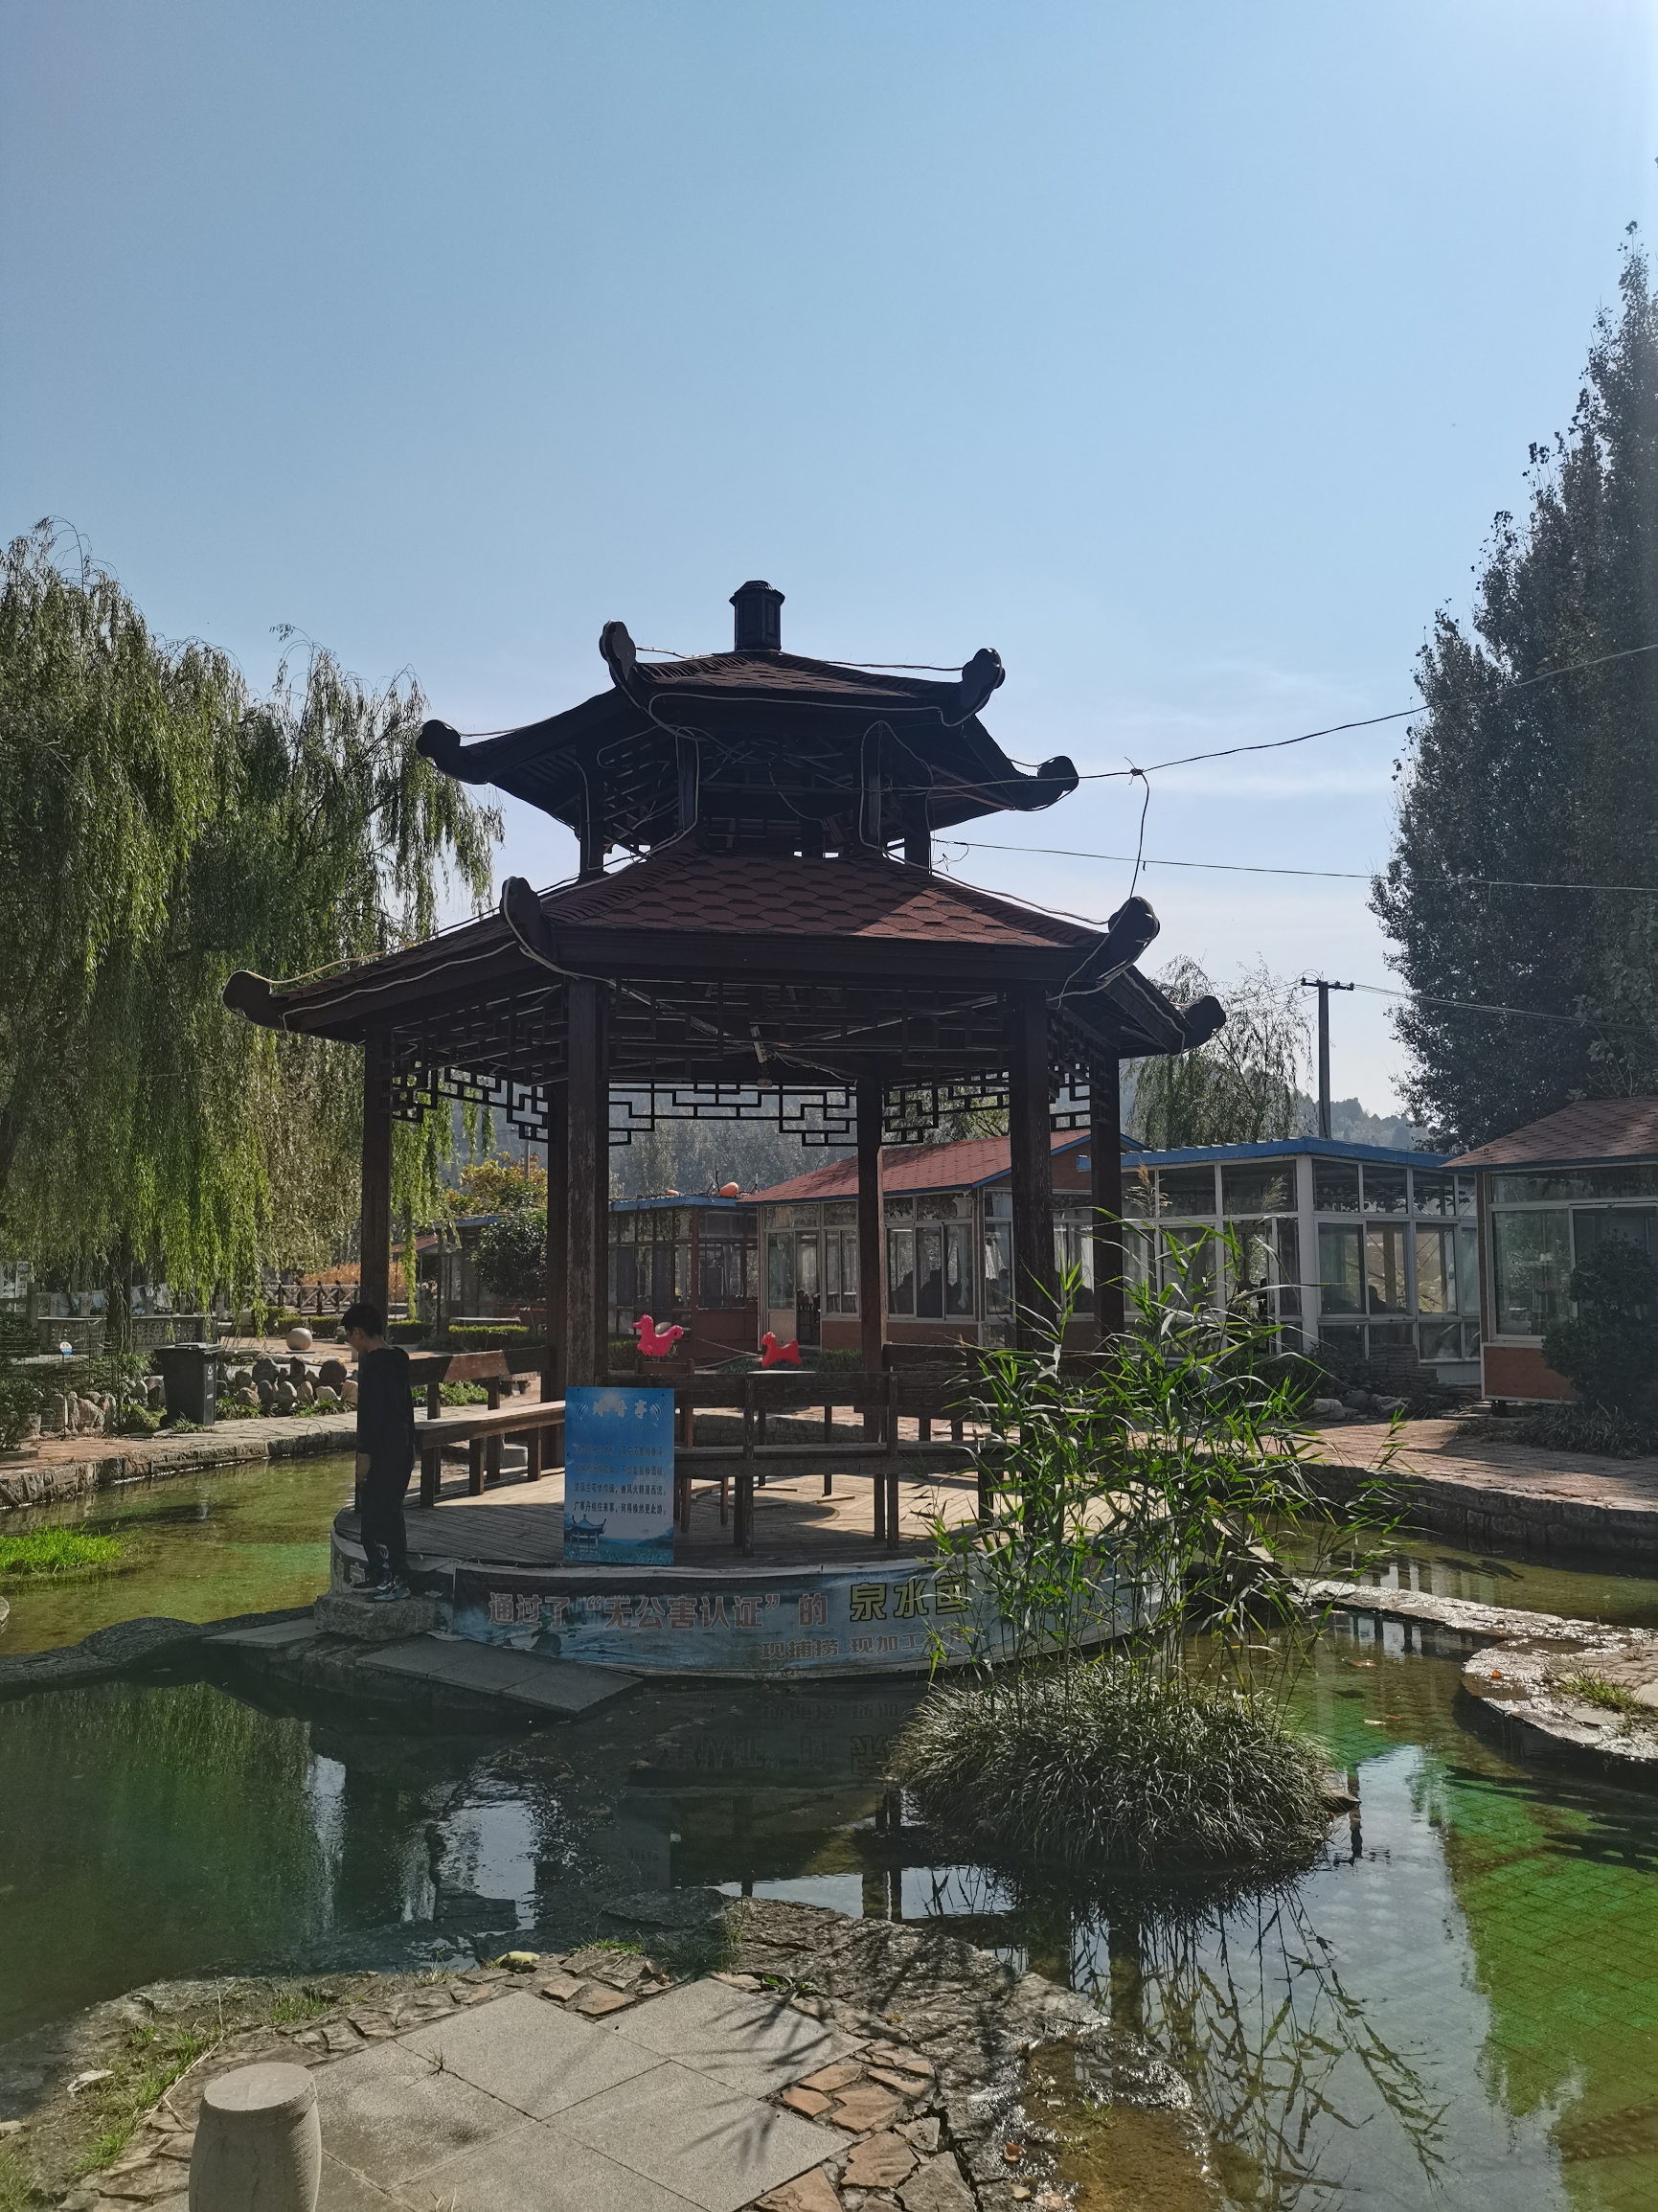 平阴县书院泉，在一个村庄的泉水景区，进入景区沿着泉水一路走到书院泉，之后可以爬山，山顶有观音洞。景区